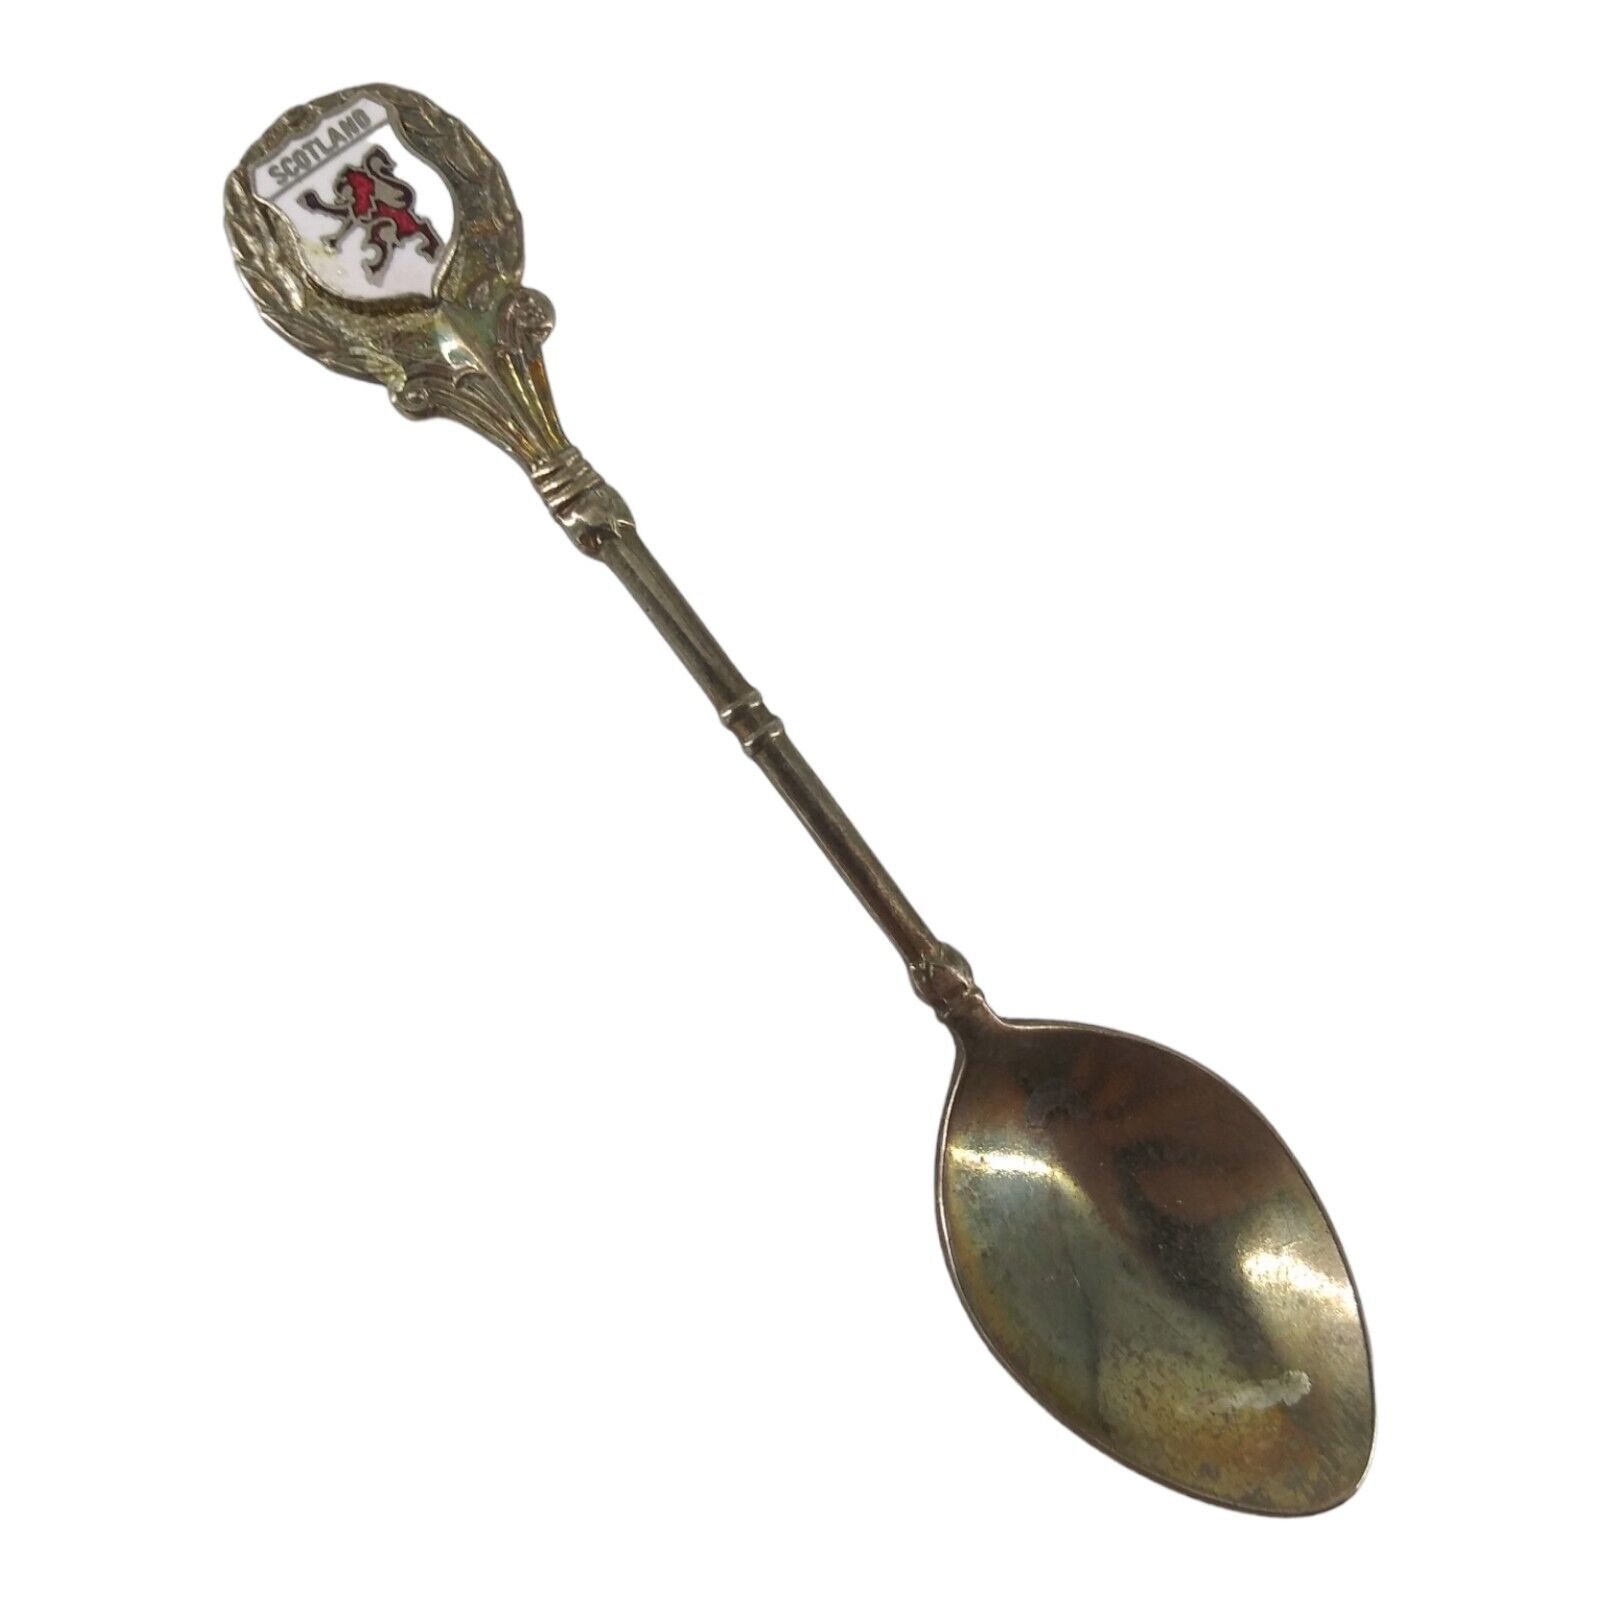 Vintage Souvenir Spoon Collectible Scotland Silver Plated